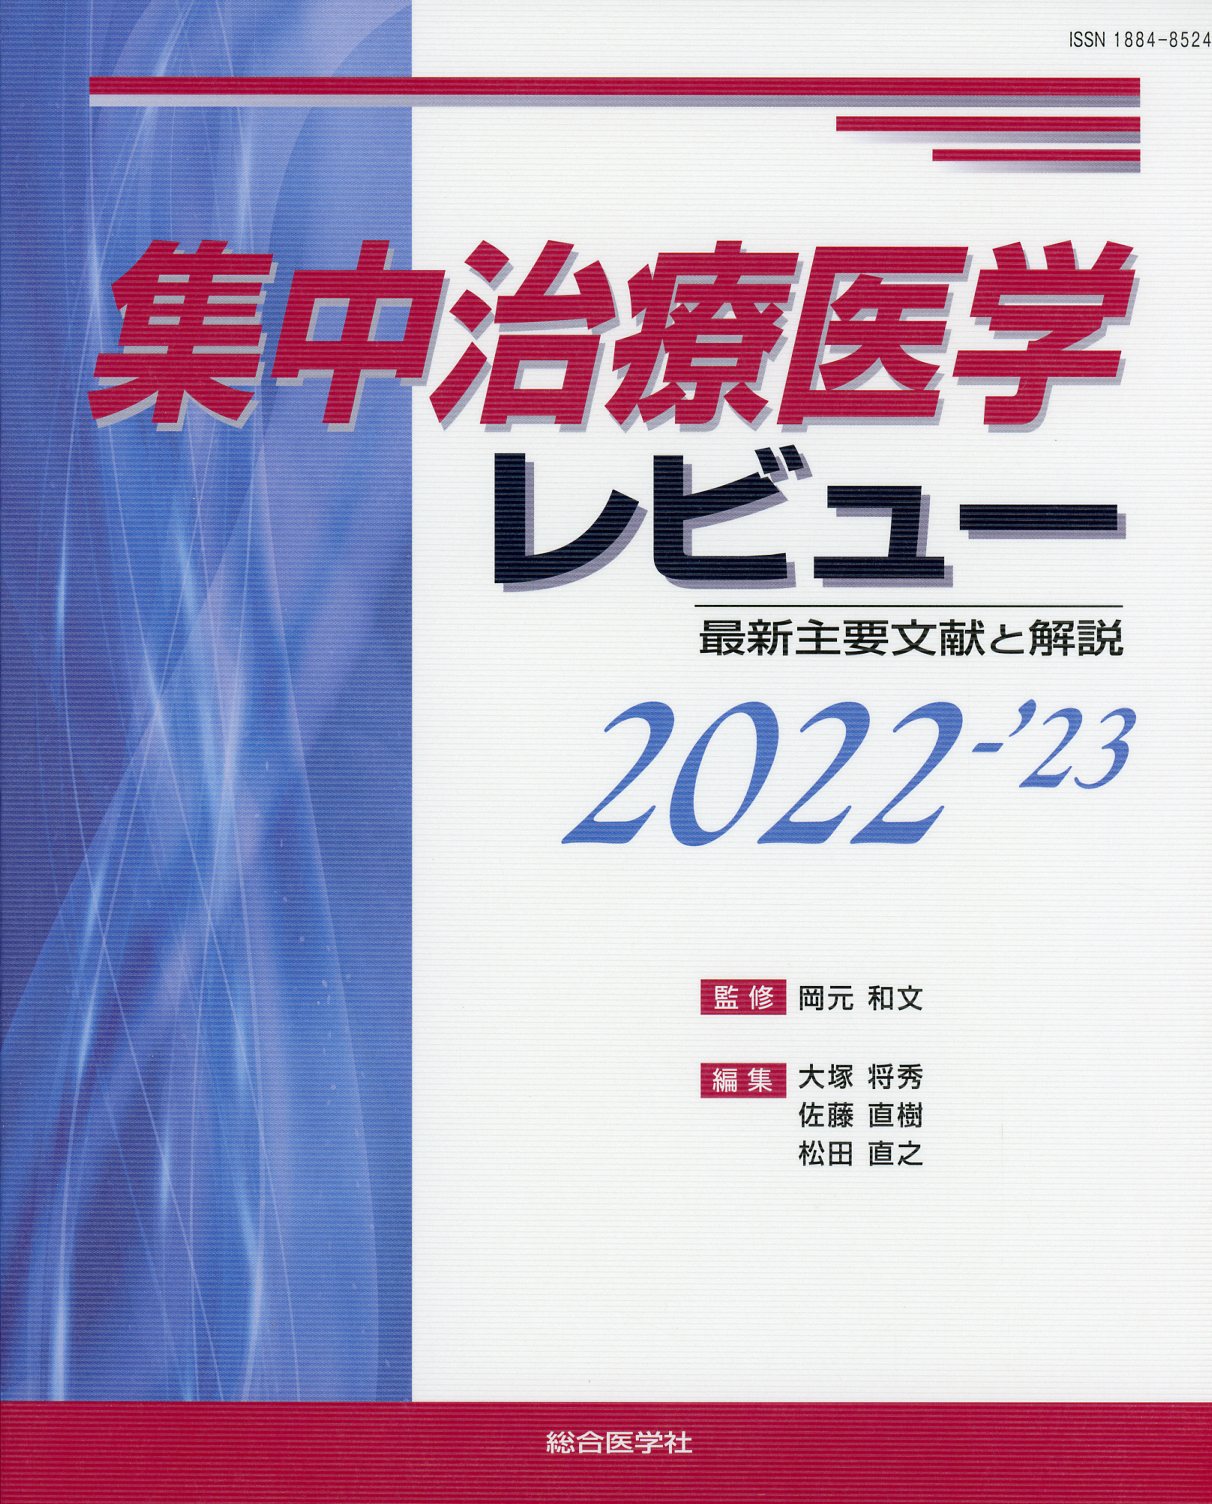 集中治療医学レビュー　2022-'23　最新主要文献と解説